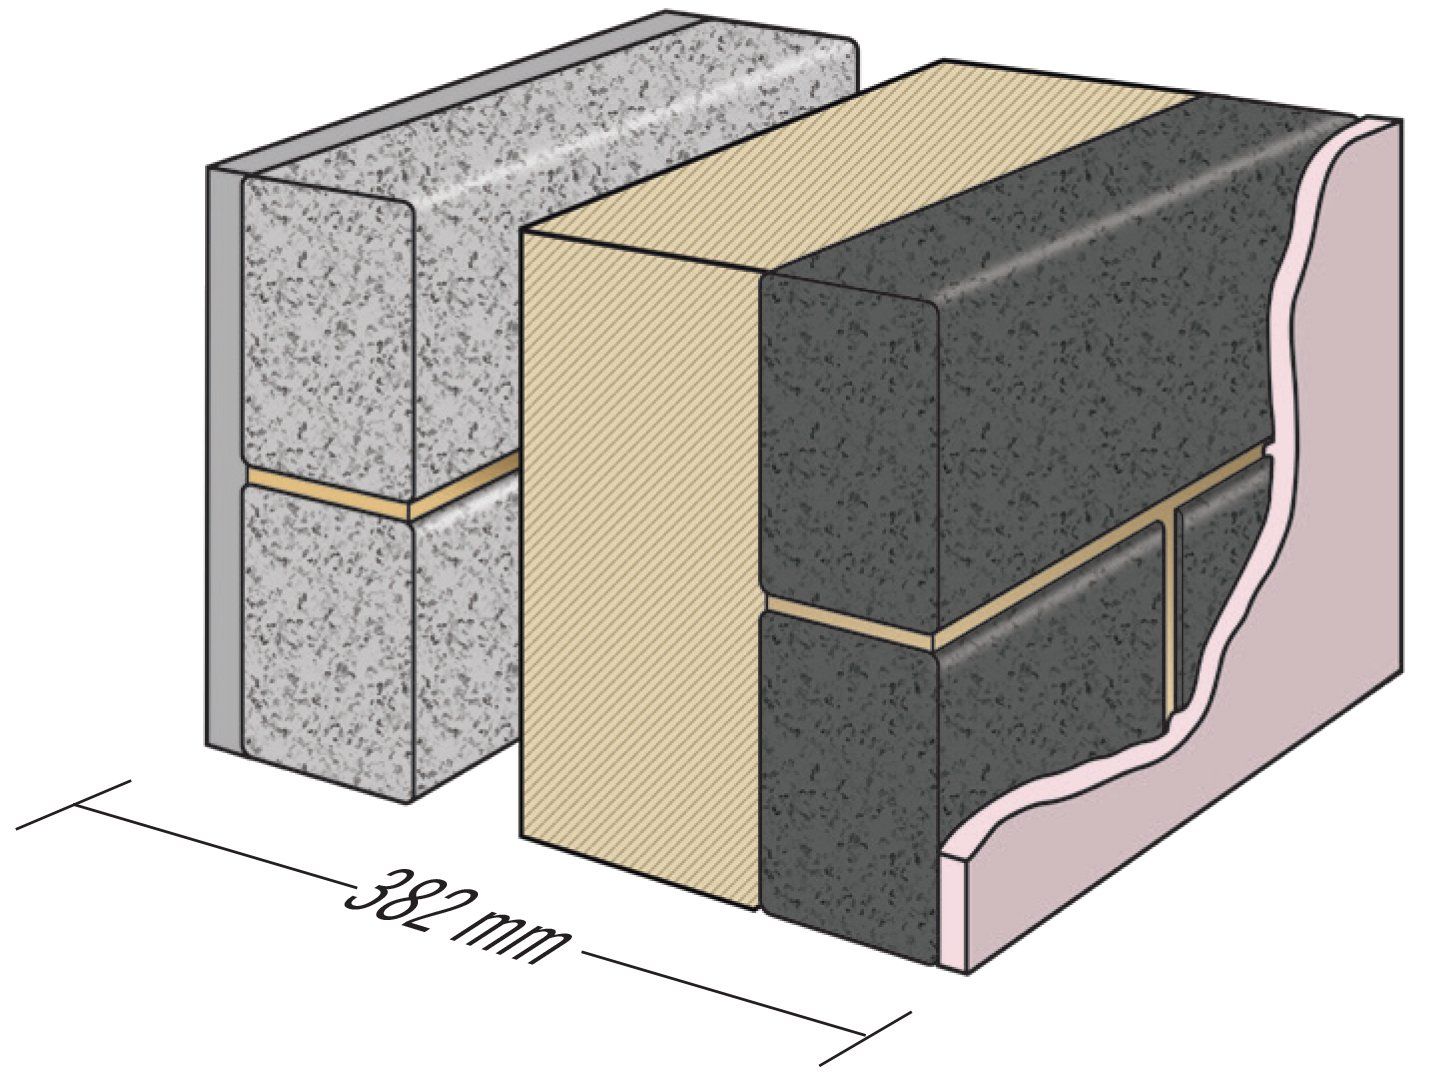 Fibotherm insulating blocks/bricks 3.6/mm² to BS EN 771-3